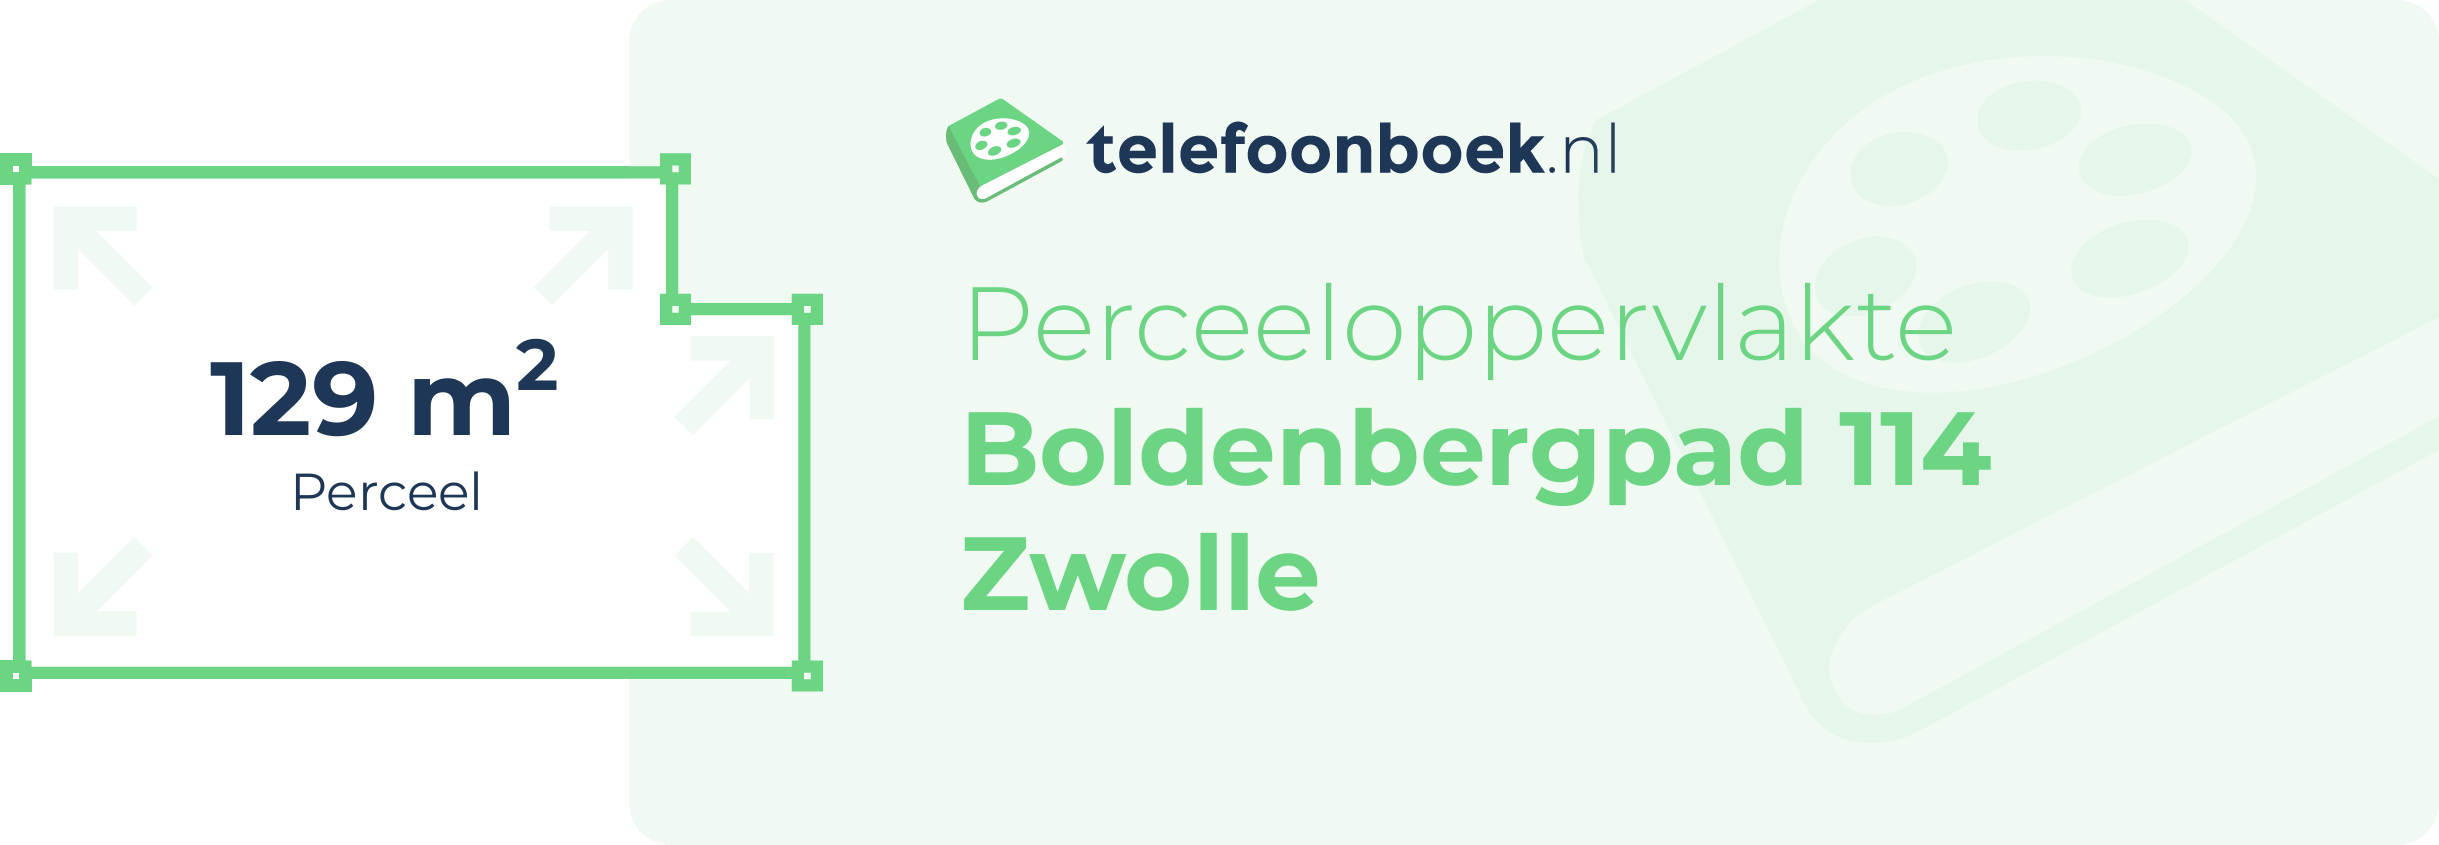 Perceeloppervlakte Boldenbergpad 114 Zwolle